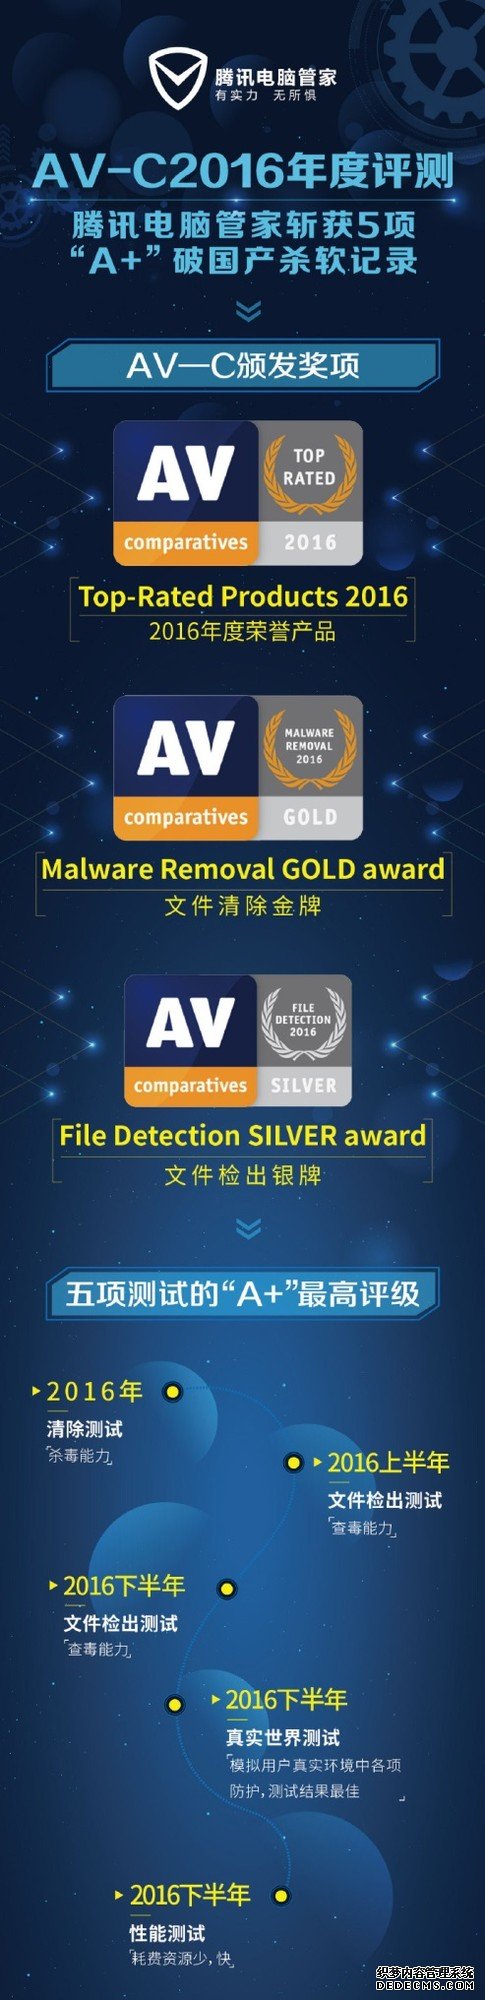 荣获5项A+评级 腾讯电脑管家闪耀AV-C评测 